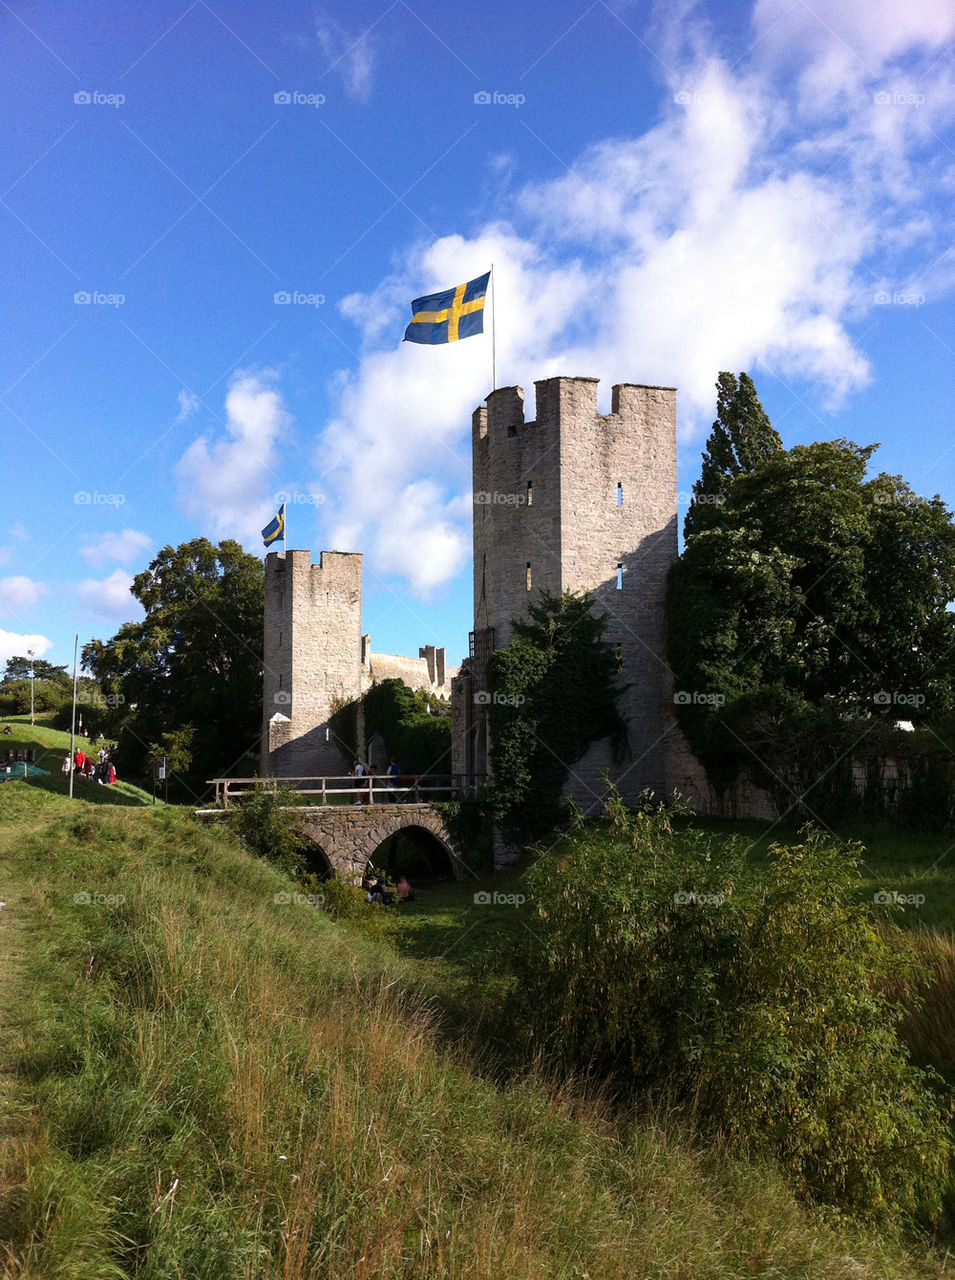 sweden grass gotland flag by hallis